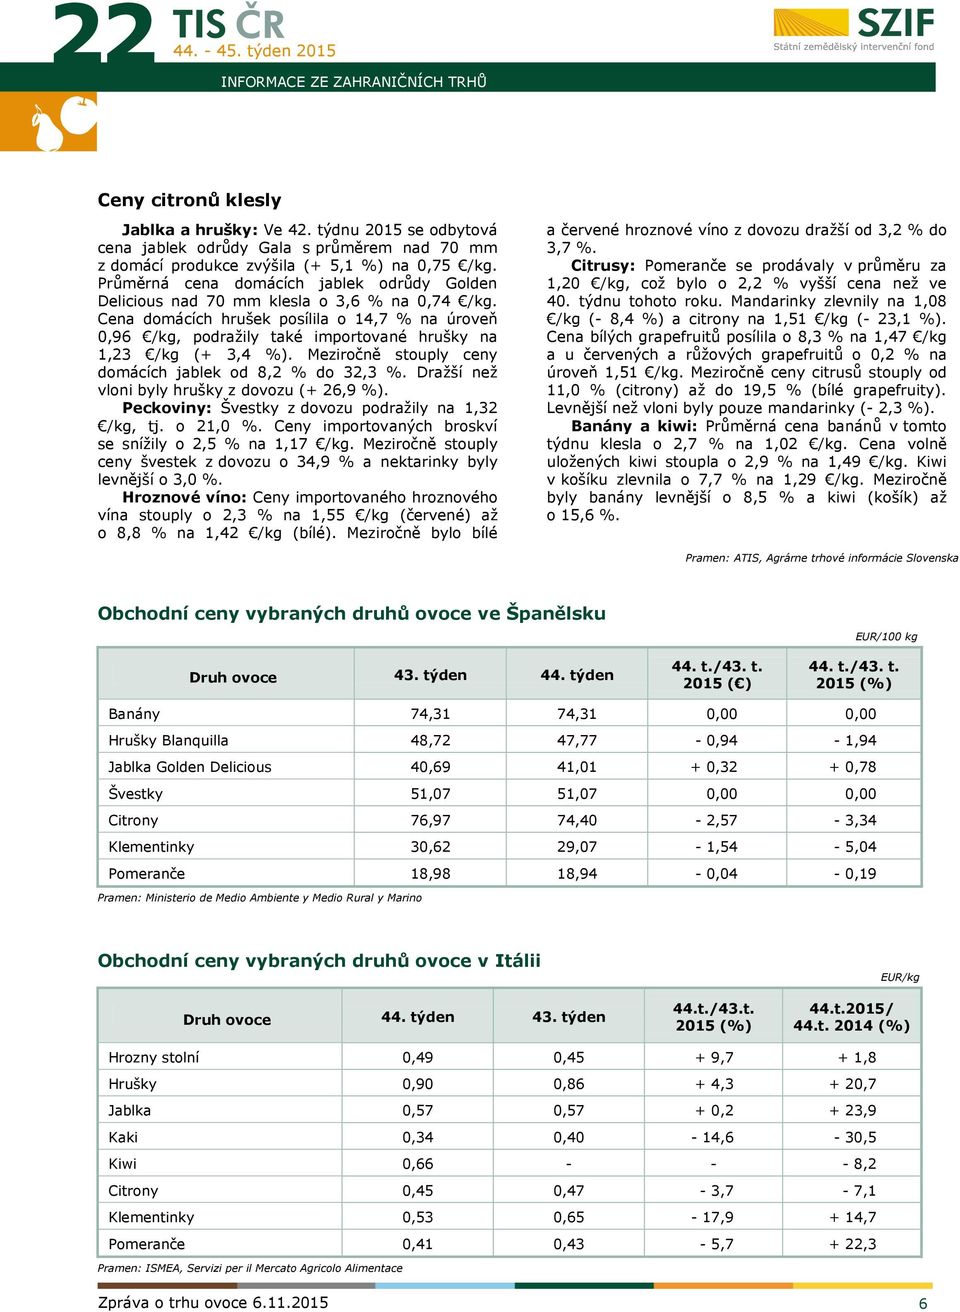 Cena domácích hrušek posílila o 14,7 % na úroveň 0,96 /kg, podražily také importované hrušky na 1,23 /kg (+ 3,4 %). Meziročně stouply ceny domácích jablek od 8,2 % do 32,3 %.